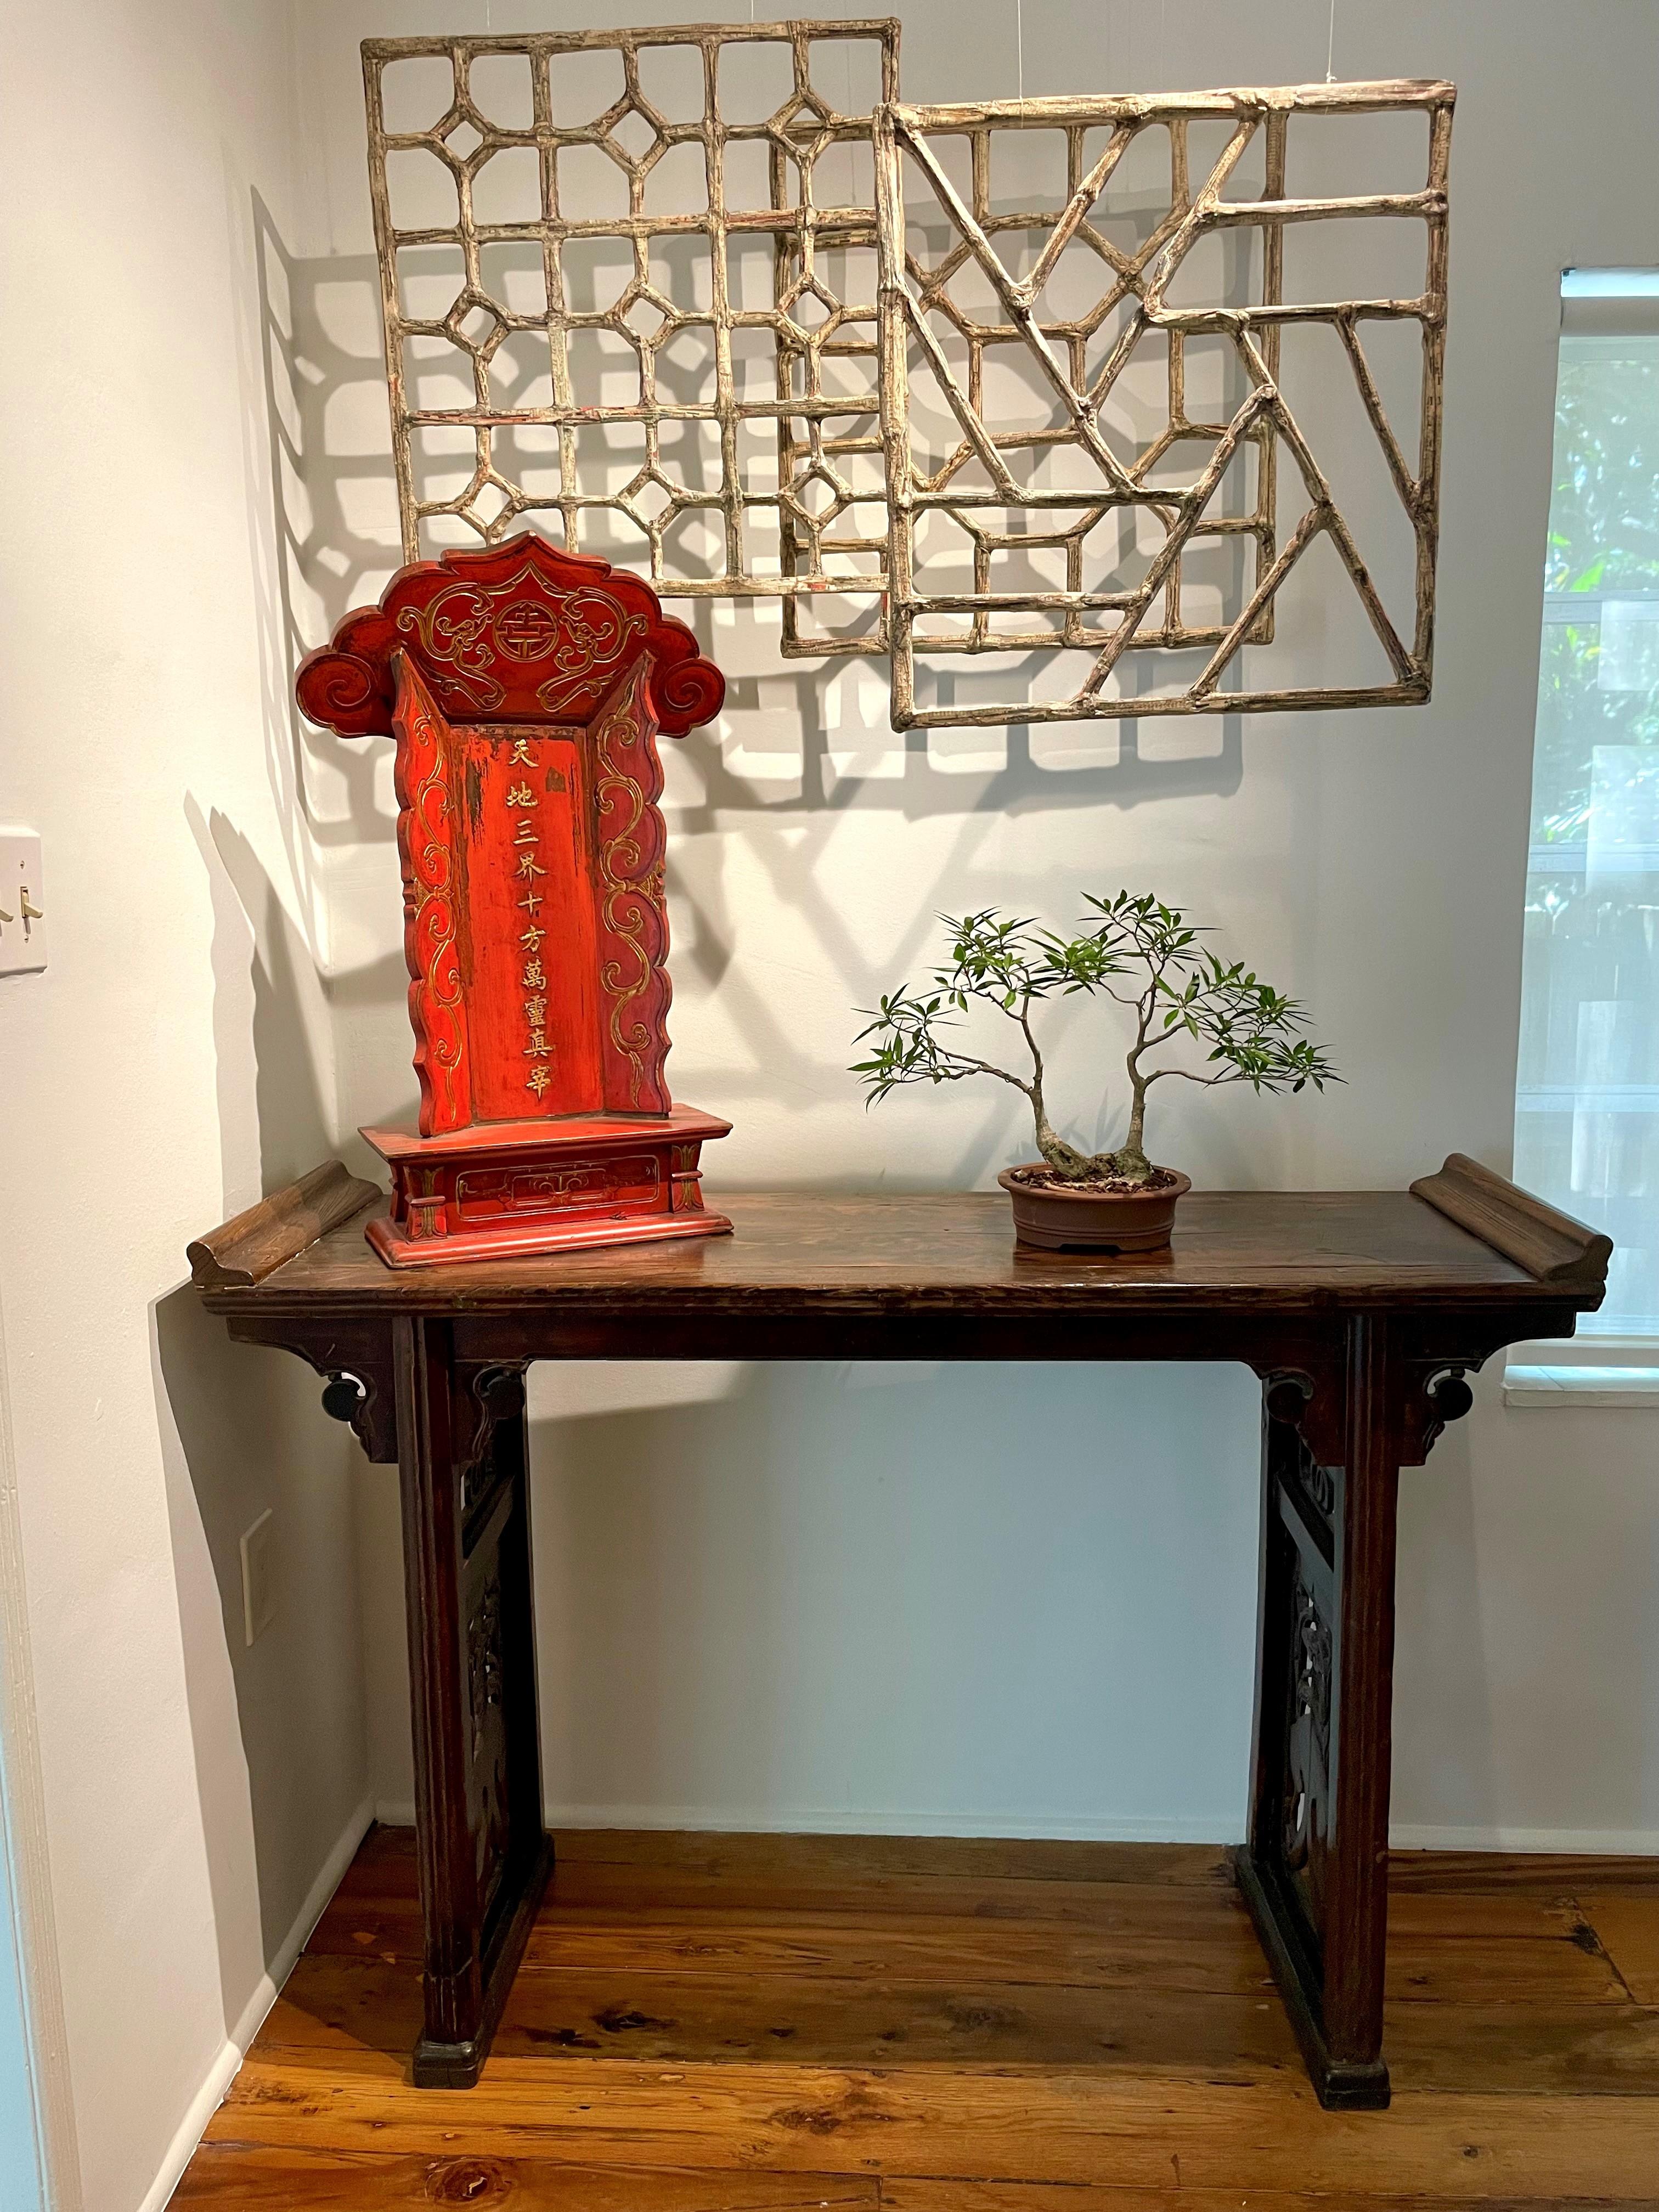 Dieser wunderschön geschnitzte Altartisch aus dem 19. Jahrhundert ist traditionell mit Schlitz und Zapfen aus Walnussholz (Hetao Mu) gefertigt. Die Schürzen an den Seiten sind mit Blumen-, Lotos- und Ruyi-Symbolen verziert. Ruyi ist ein altes Symbol